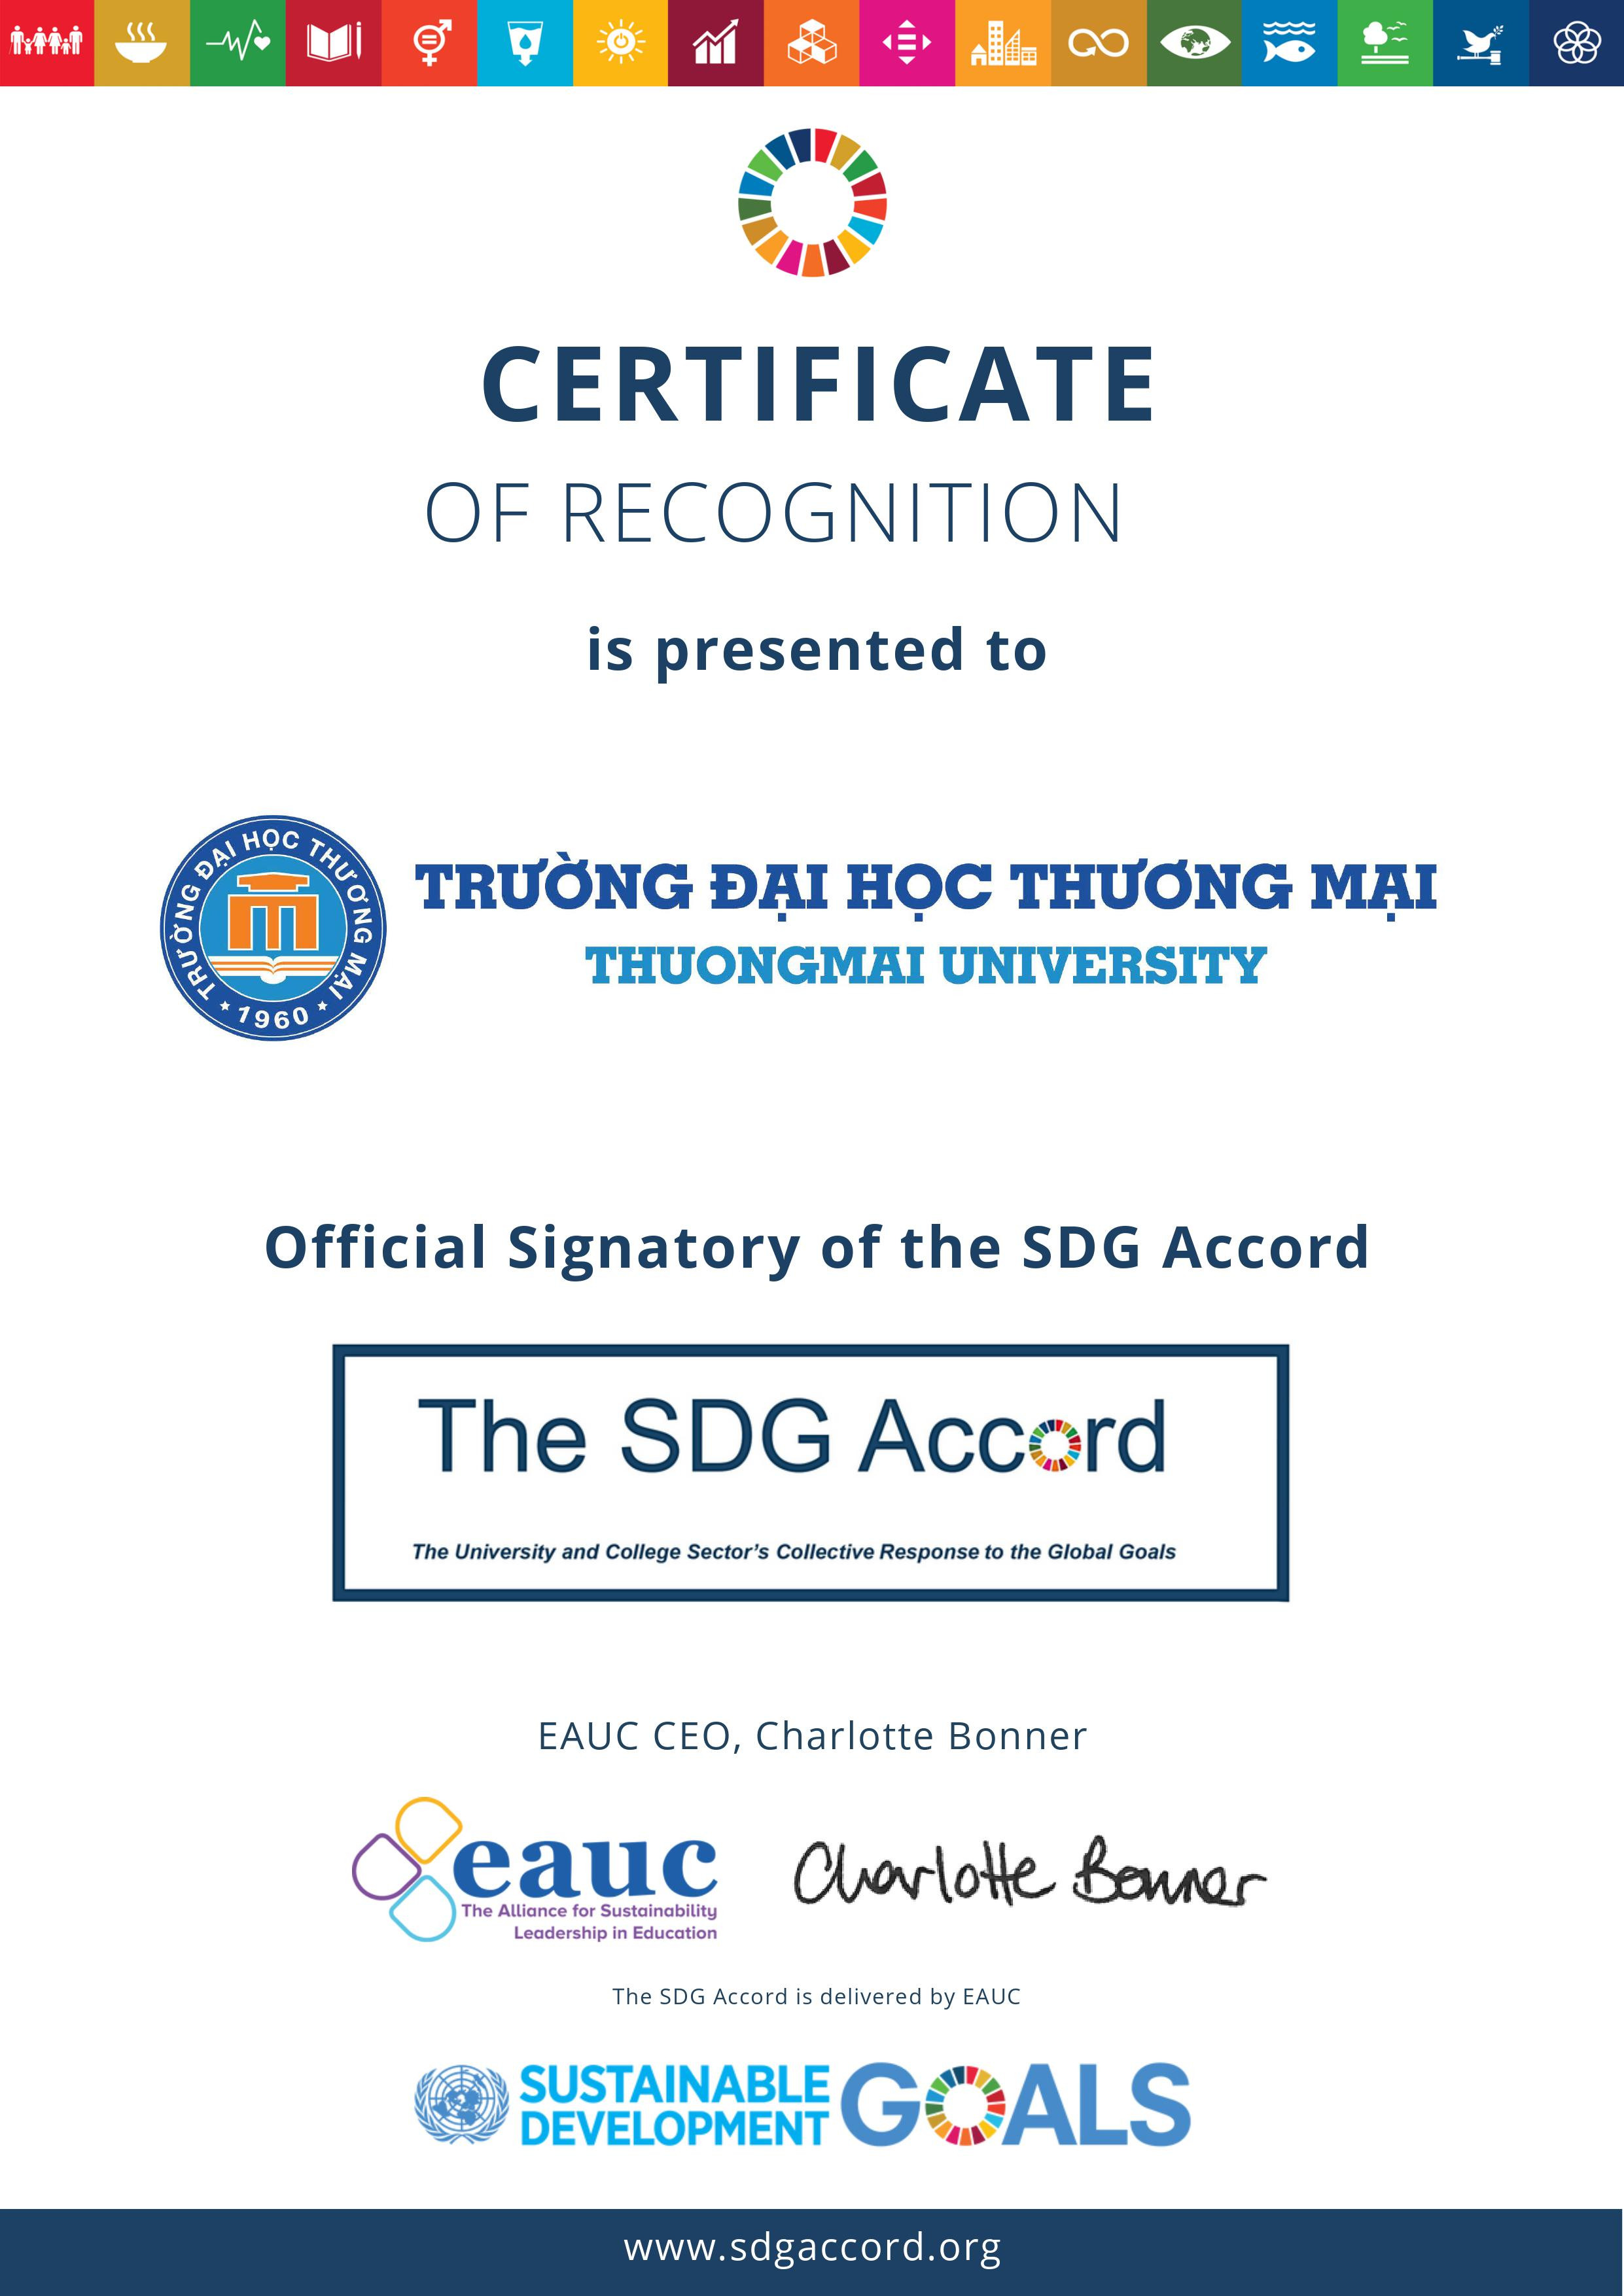 Trường Đại học Thương mại gia nhập SDG Accord